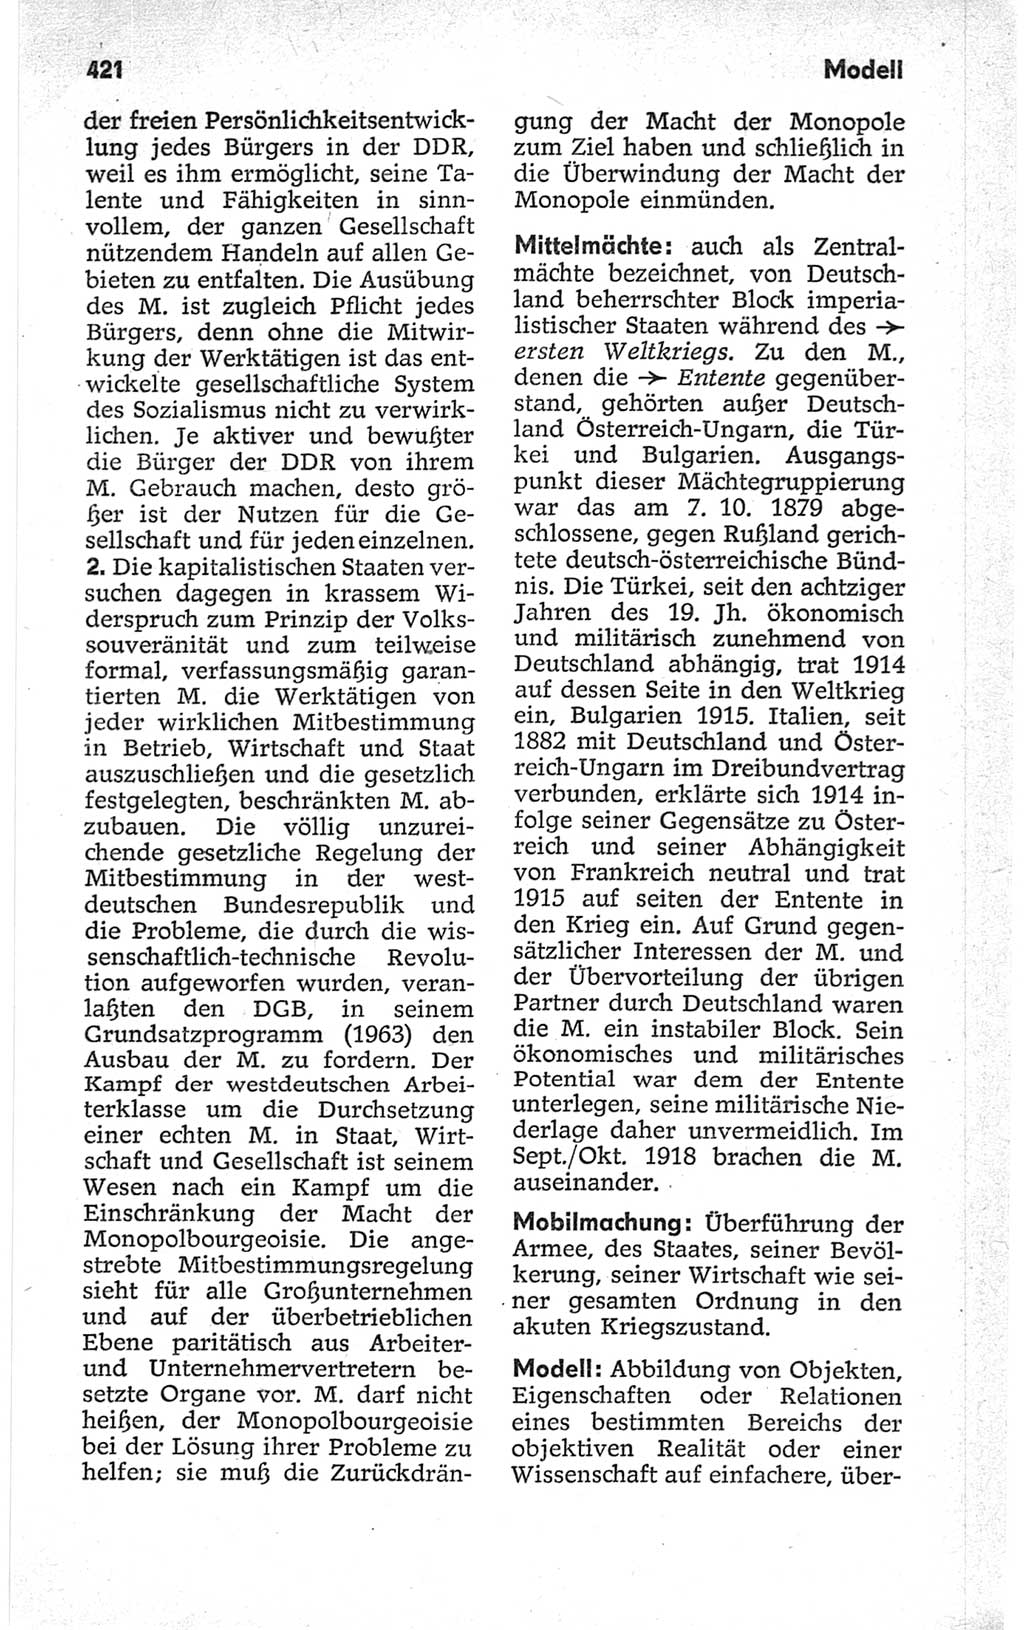 Kleines politisches Wörterbuch [Deutsche Demokratische Republik (DDR)] 1967, Seite 421 (Kl. pol. Wb. DDR 1967, S. 421)